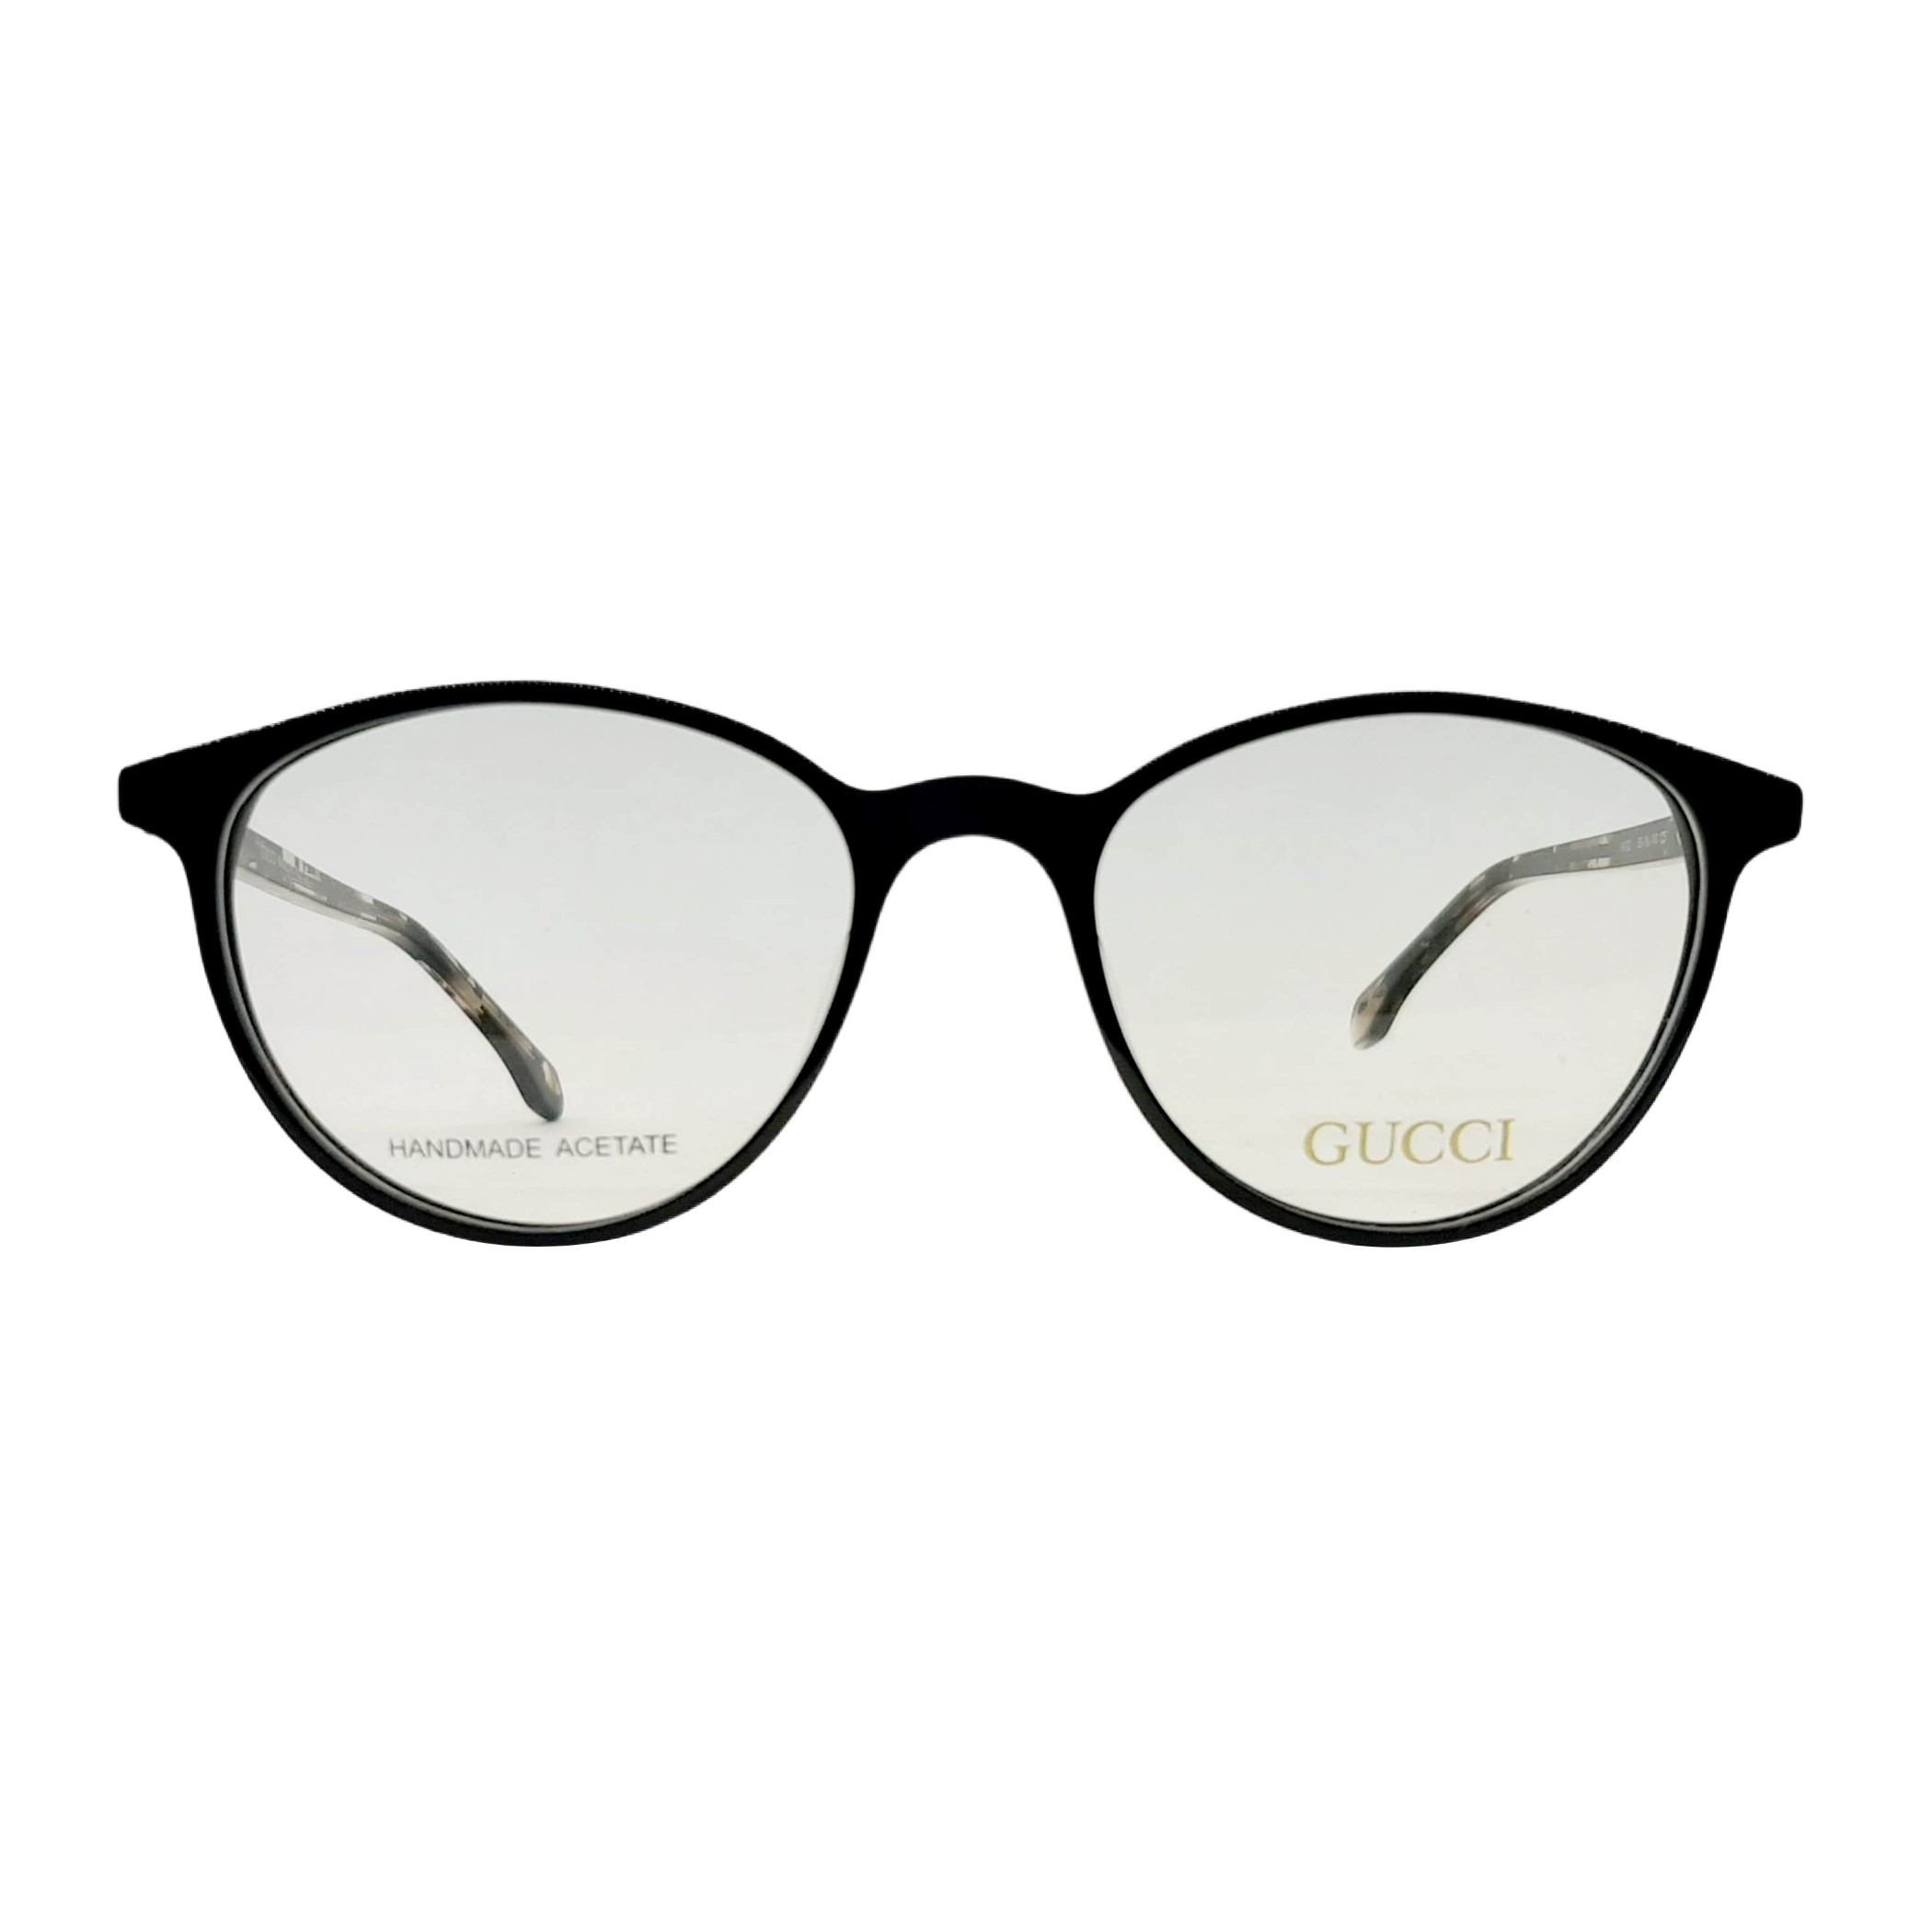 فریم عینک طبی زنانه گوچی مدل HA32c5